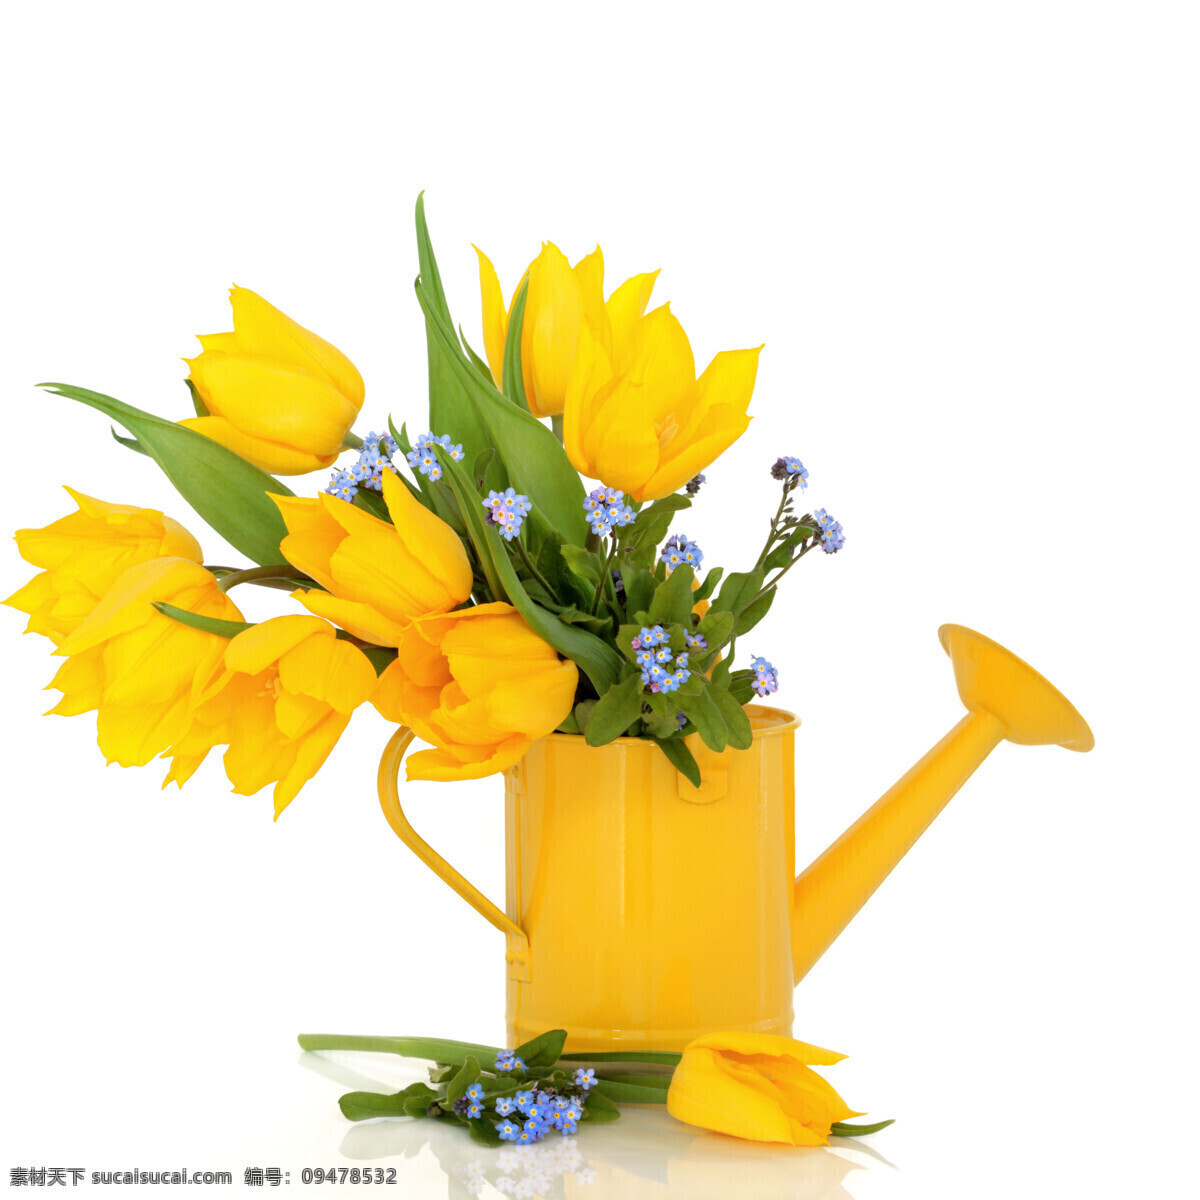 黄色 郁金香 郁金花 黄色郁金香 花卉 鲜花 花朵 美丽鲜花 花草树木 生物世界 白色